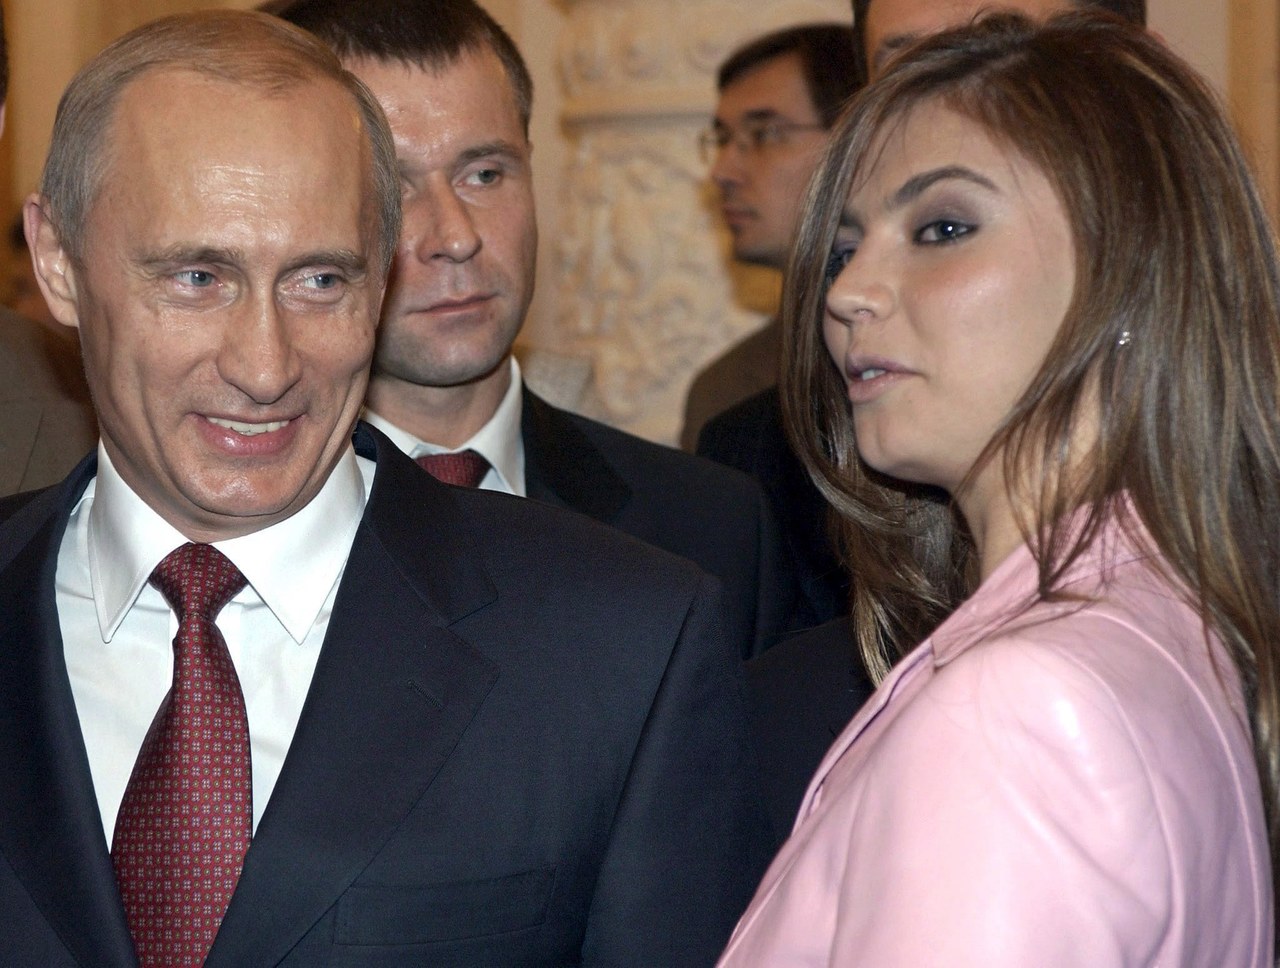 Domniemana kochanka Putina ukrywa się w Szwajcarii? Powstała petycja, by wydalić Alinę Kabajewą